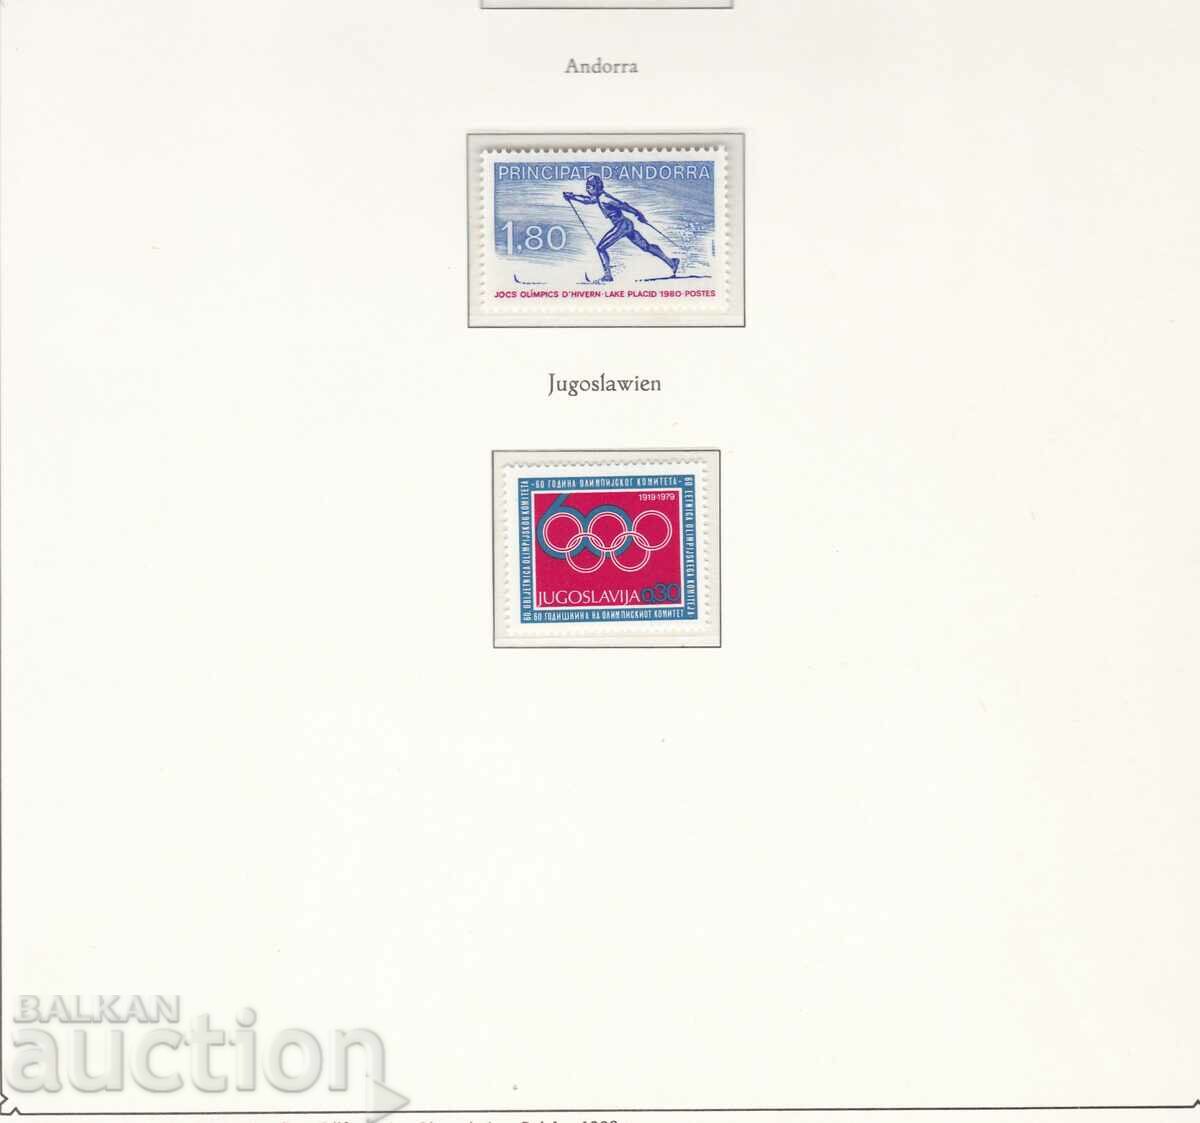 1980 Андора Угославия Олимпийски игри Москва 1980